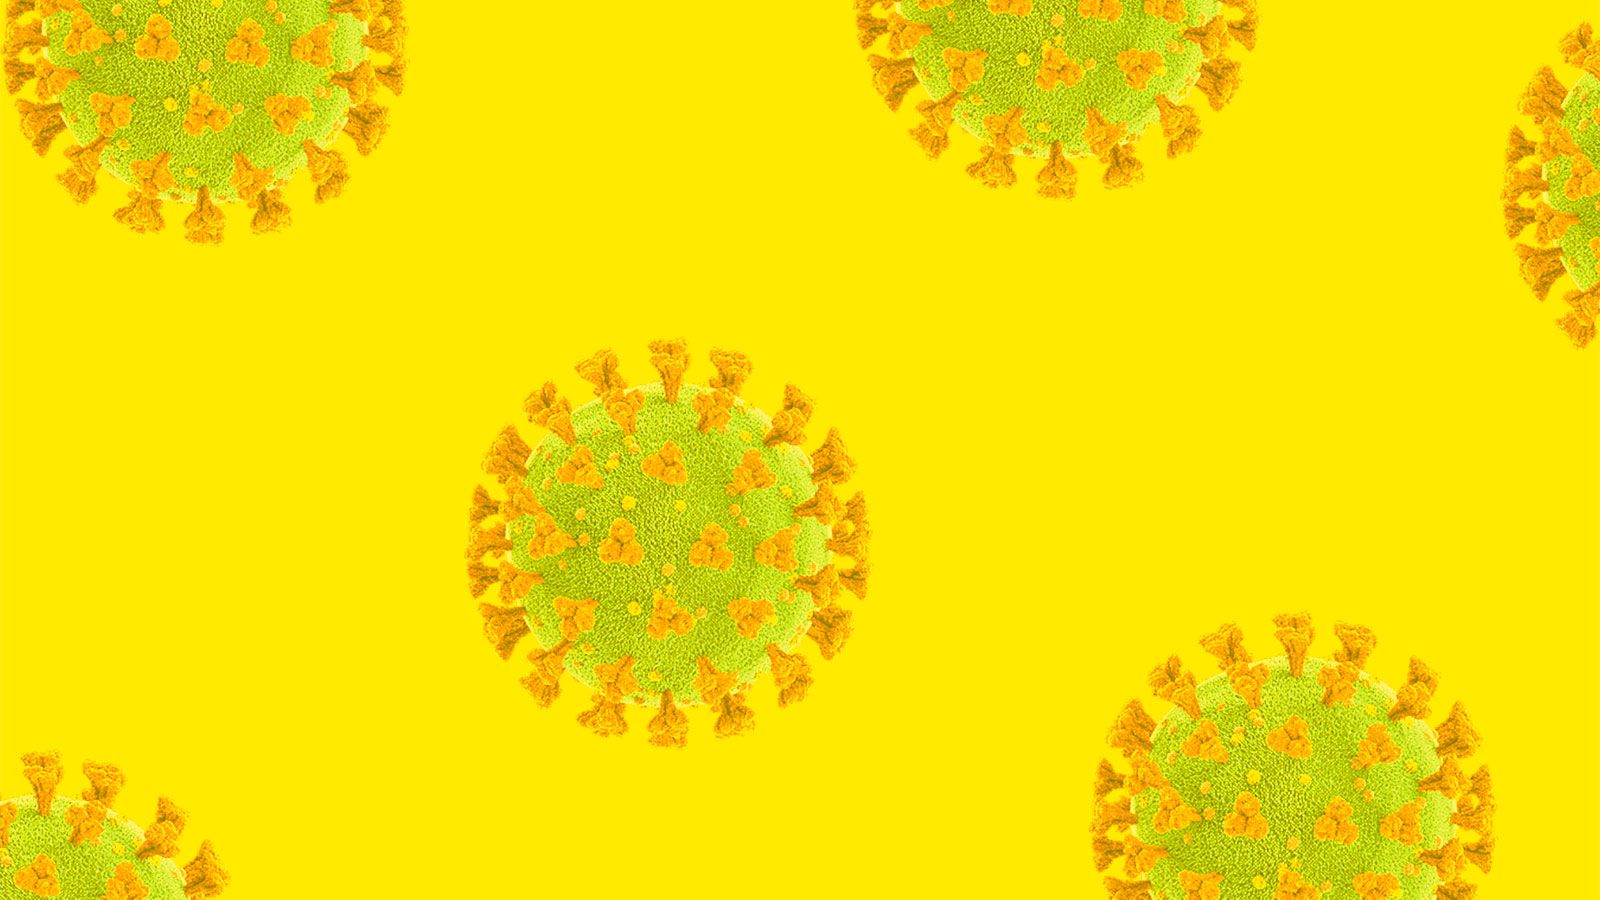  Virus Hintergrundbild 1600x900. Climate in the Time of Coronavirus